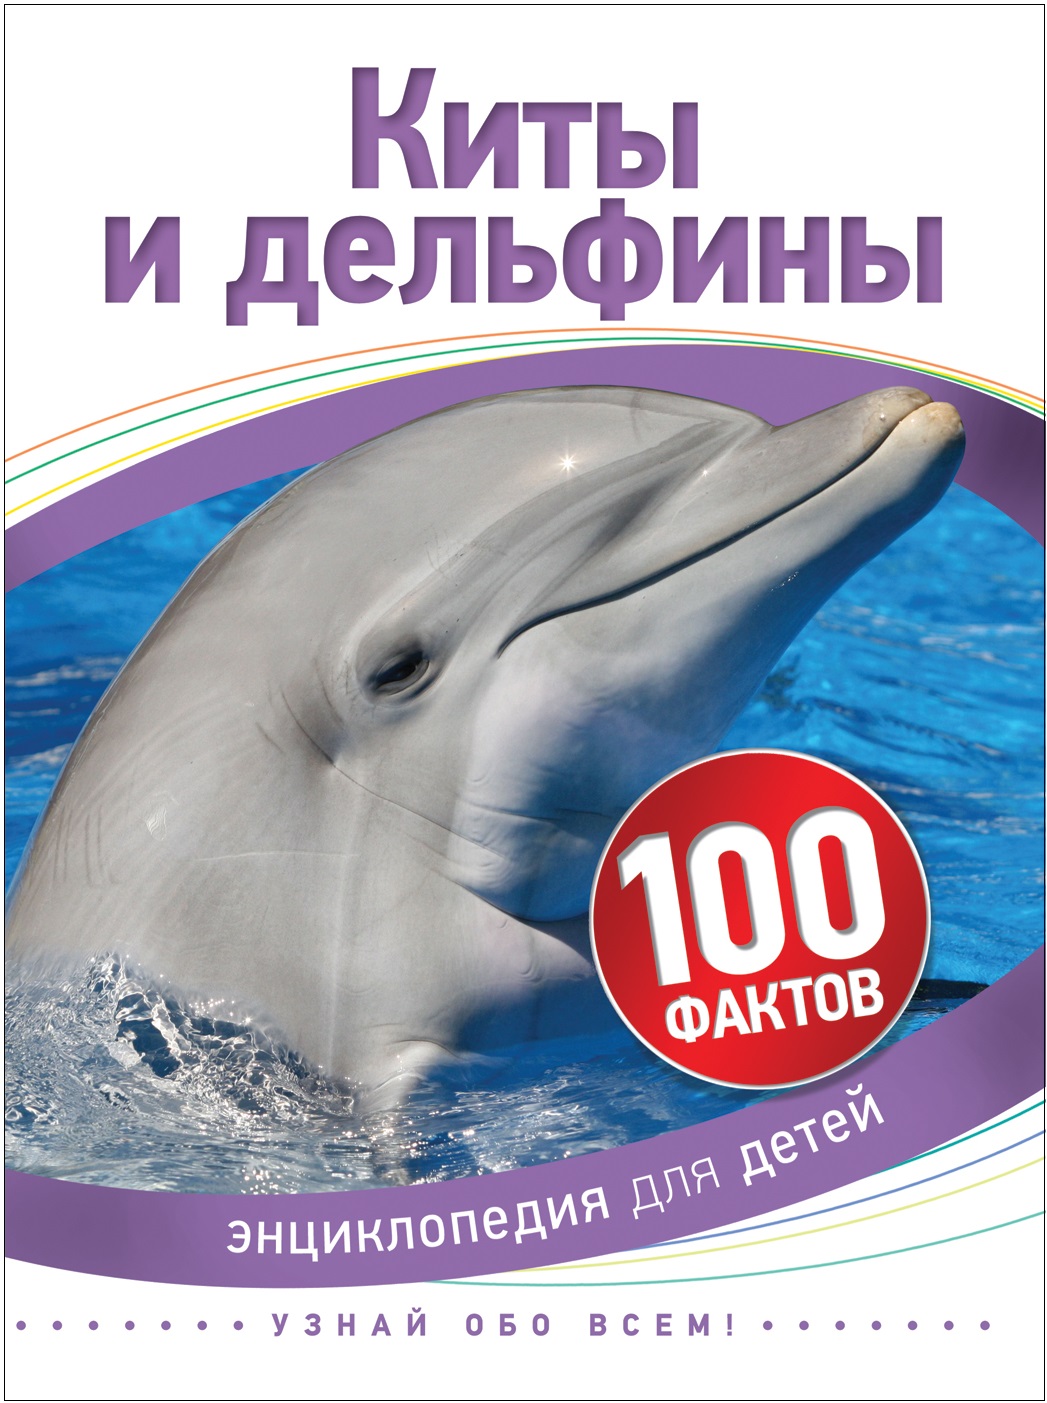 Книга 35069 "Киты и дельфины" 100 фактов Росмэн - Бугульма 